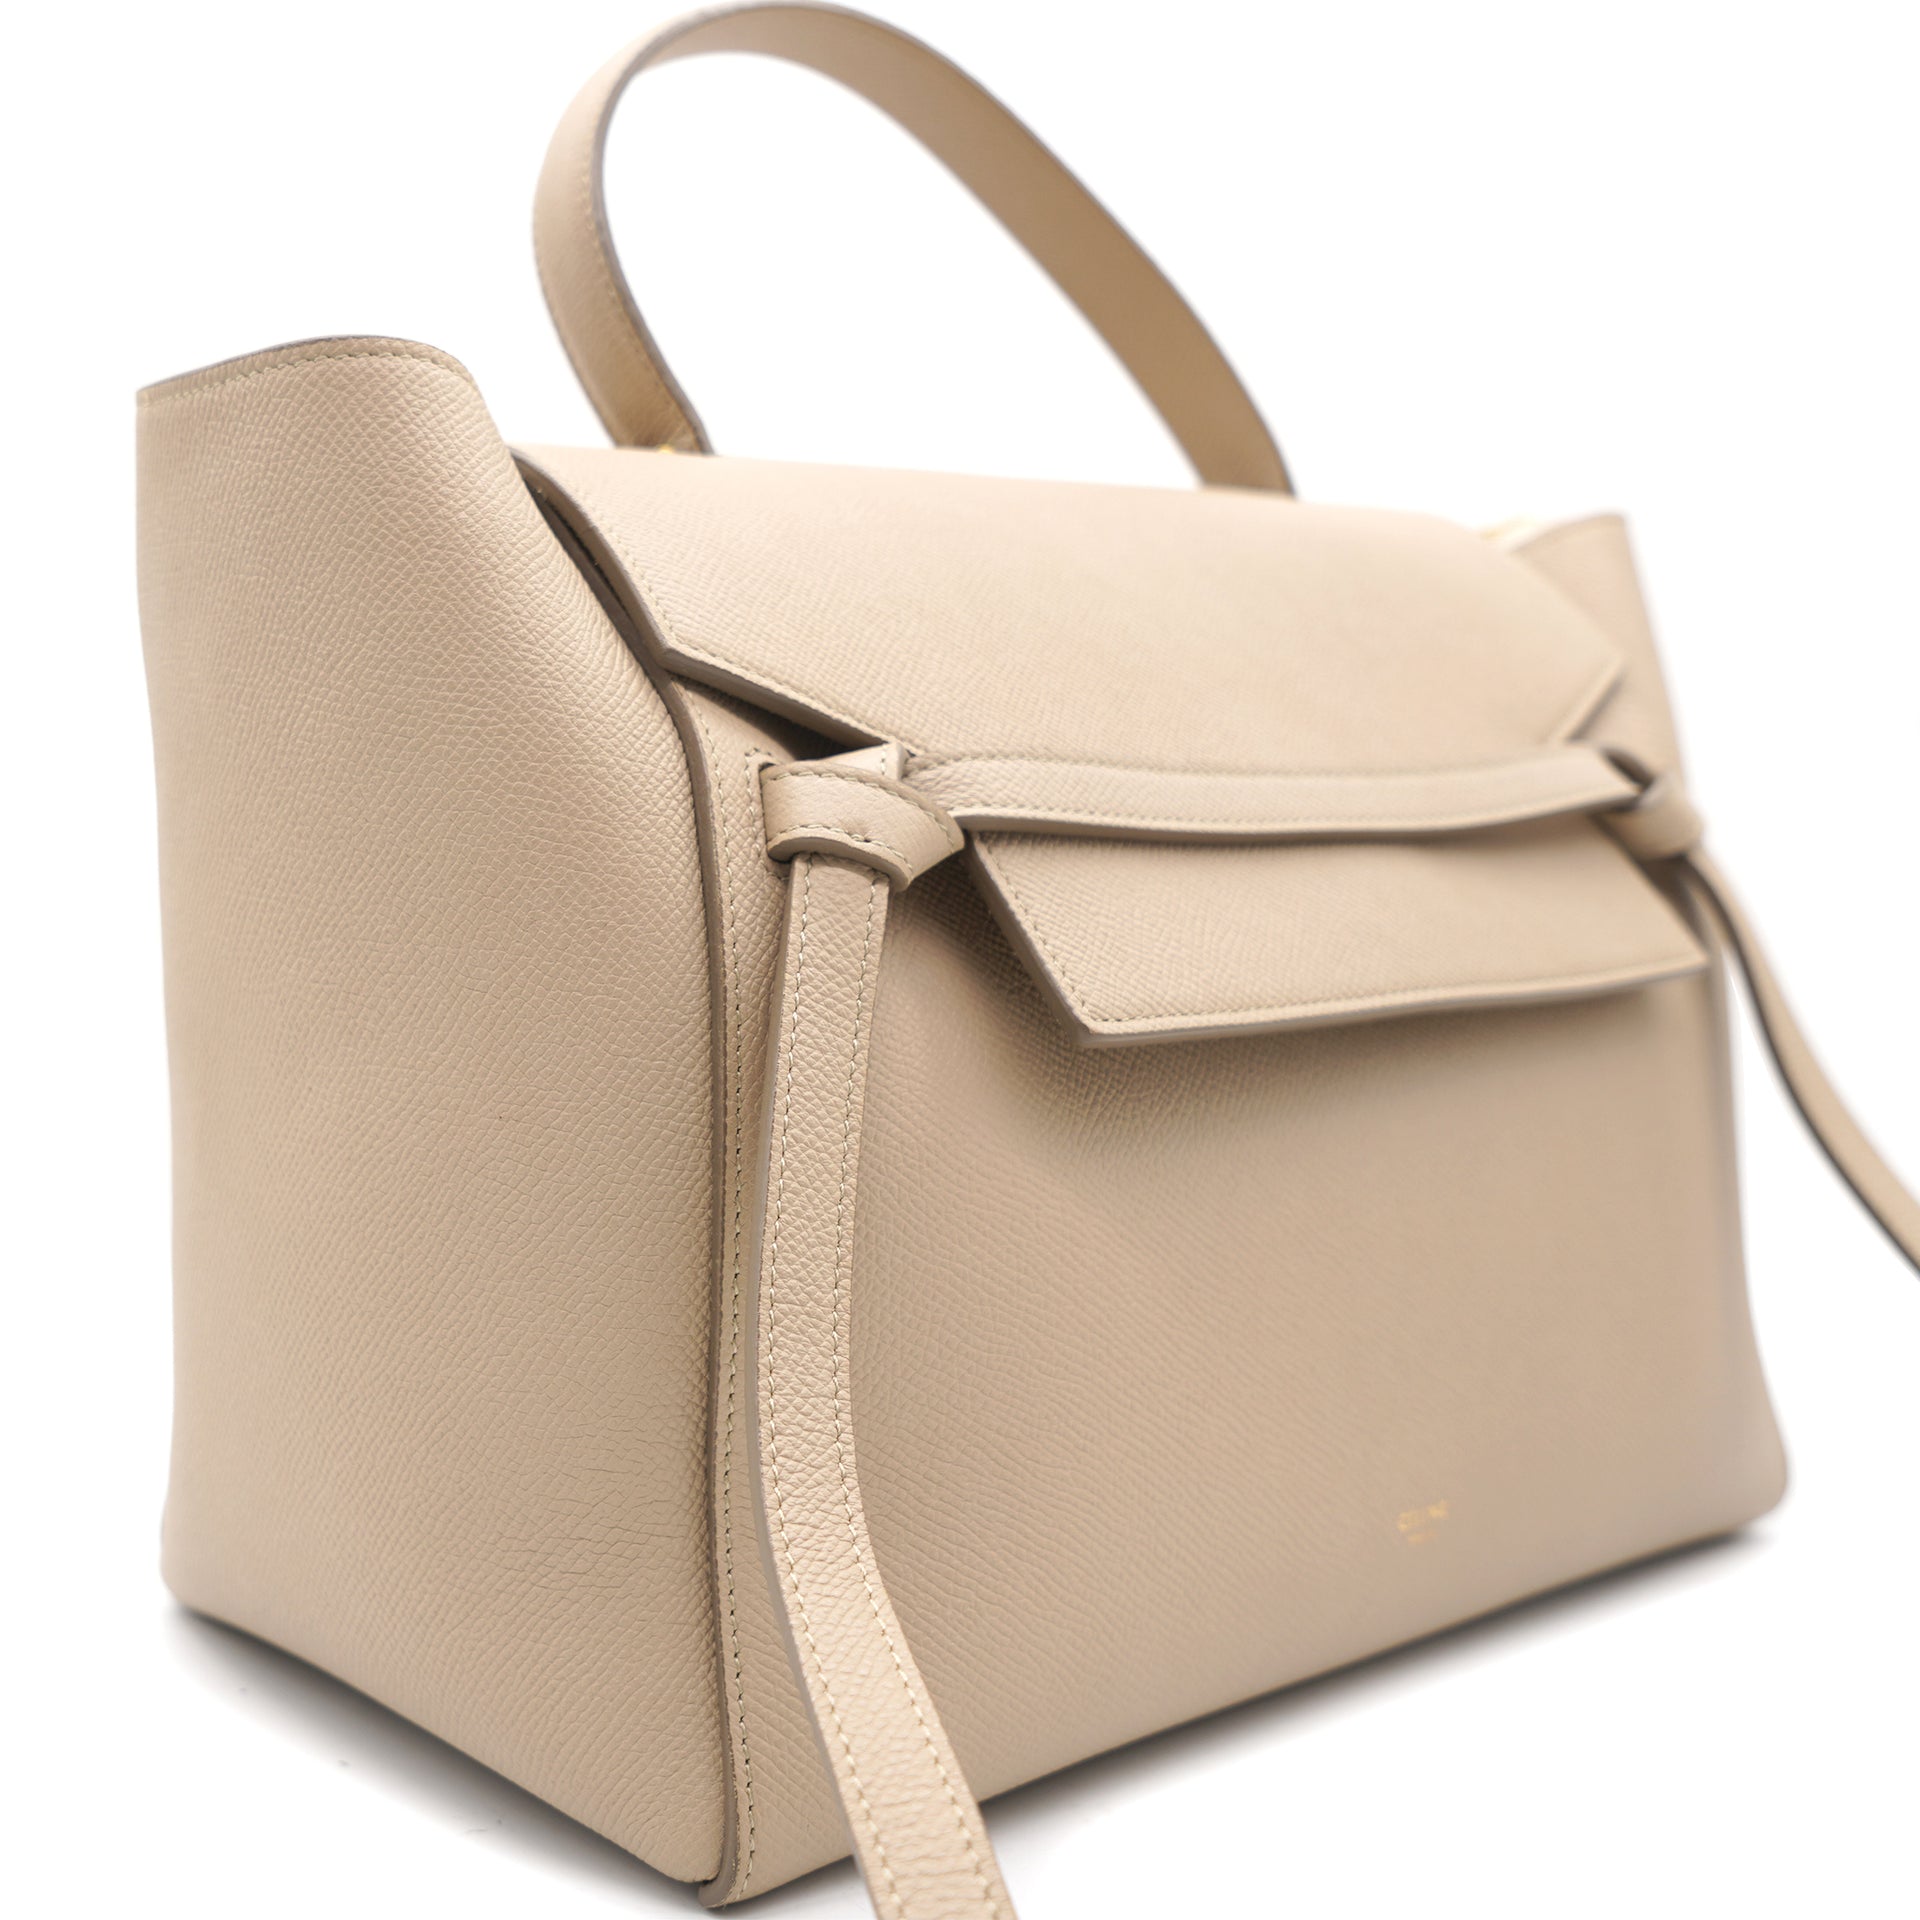 Celine belt bag nano handbag color light taupe shoulder leather